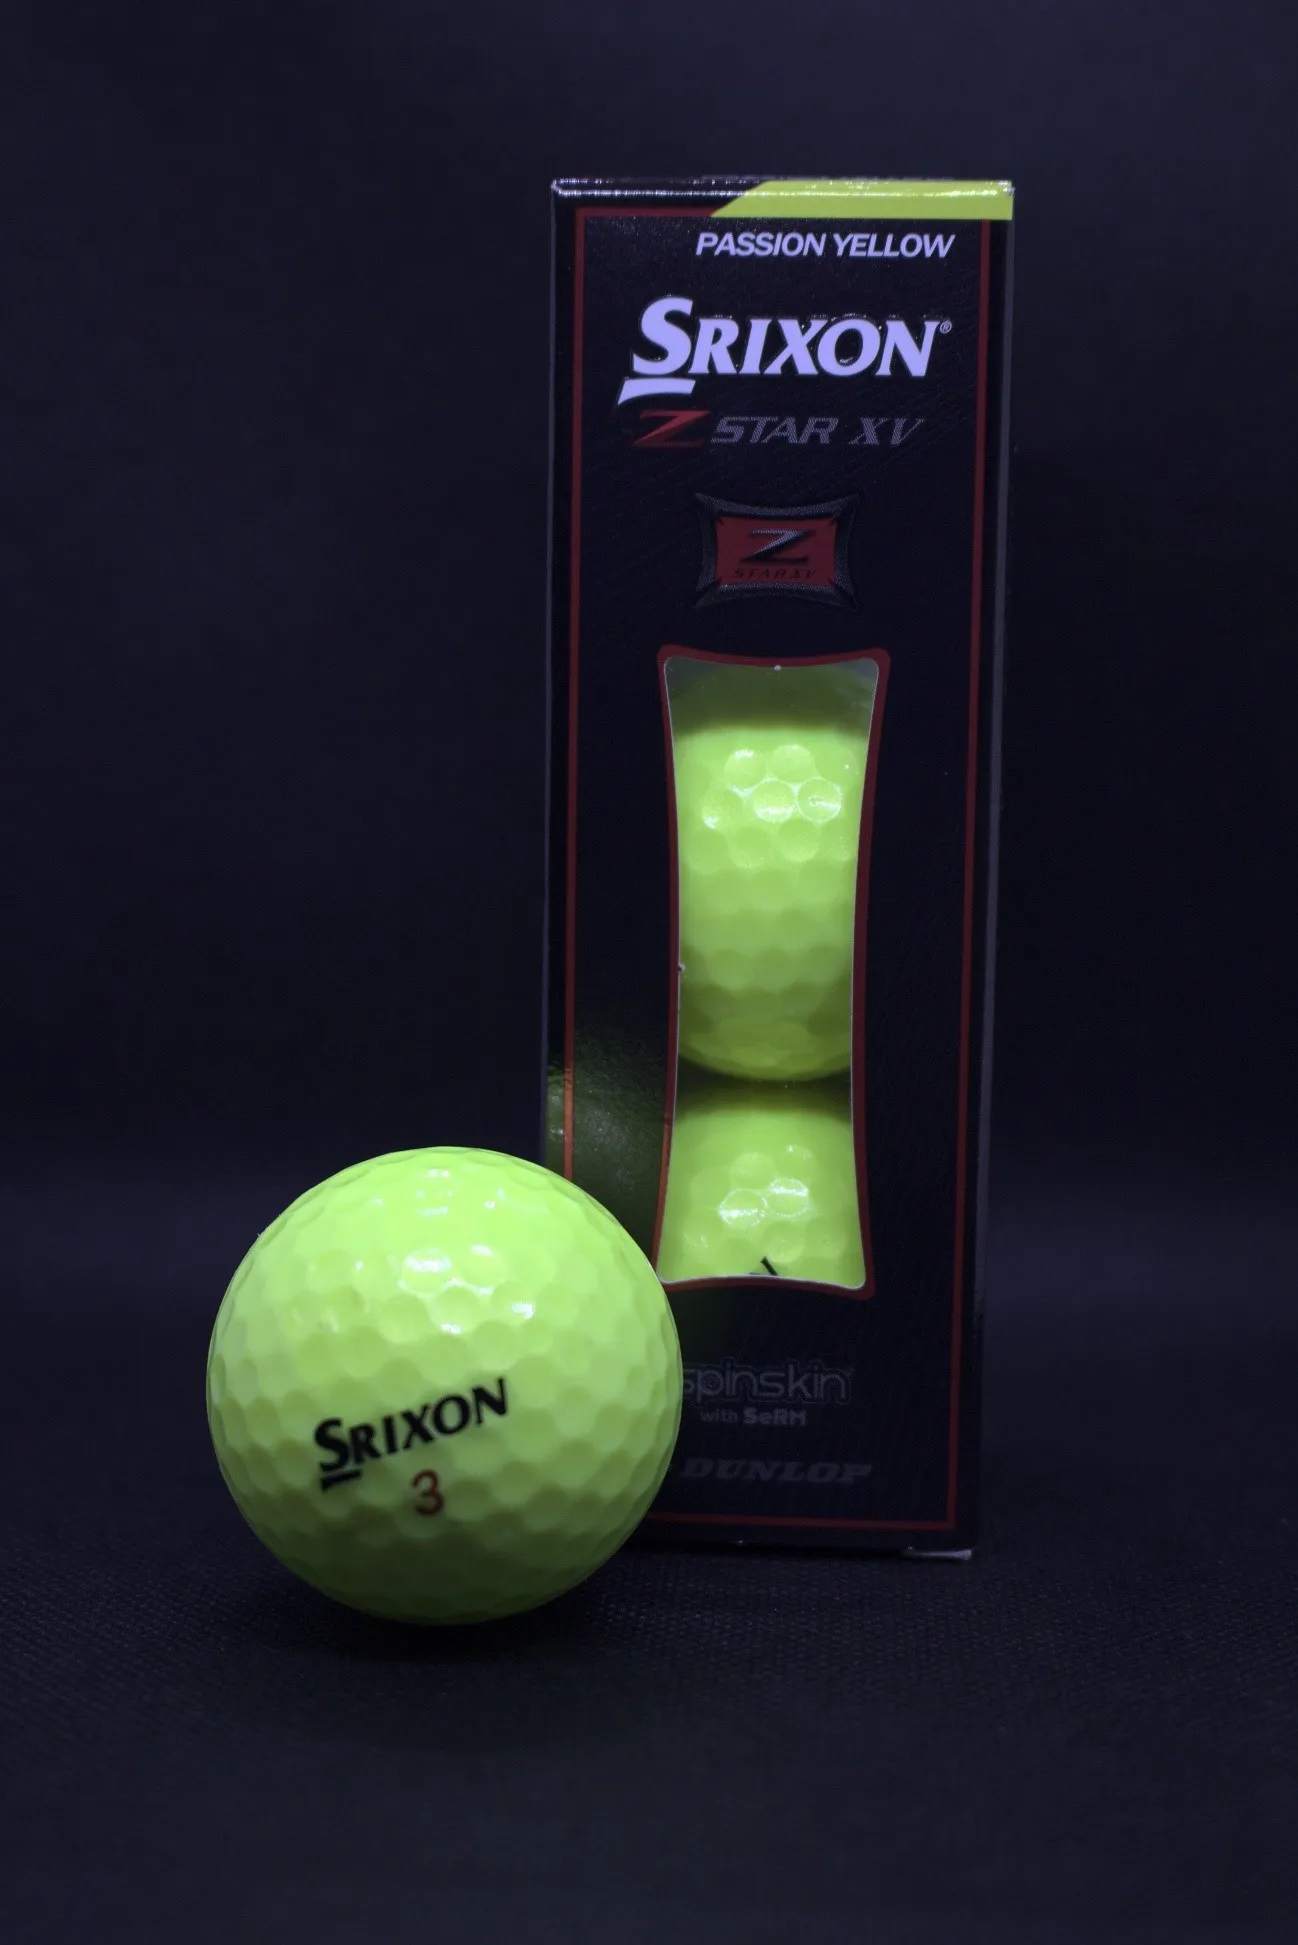 ダンロップ スリクソン ディスタンス ゴルフボール 2022年モデル 1ダース 12個入り パッションイエロー  SRIXON-DIS-22-YE-12P 返品種別A 今季ブランド